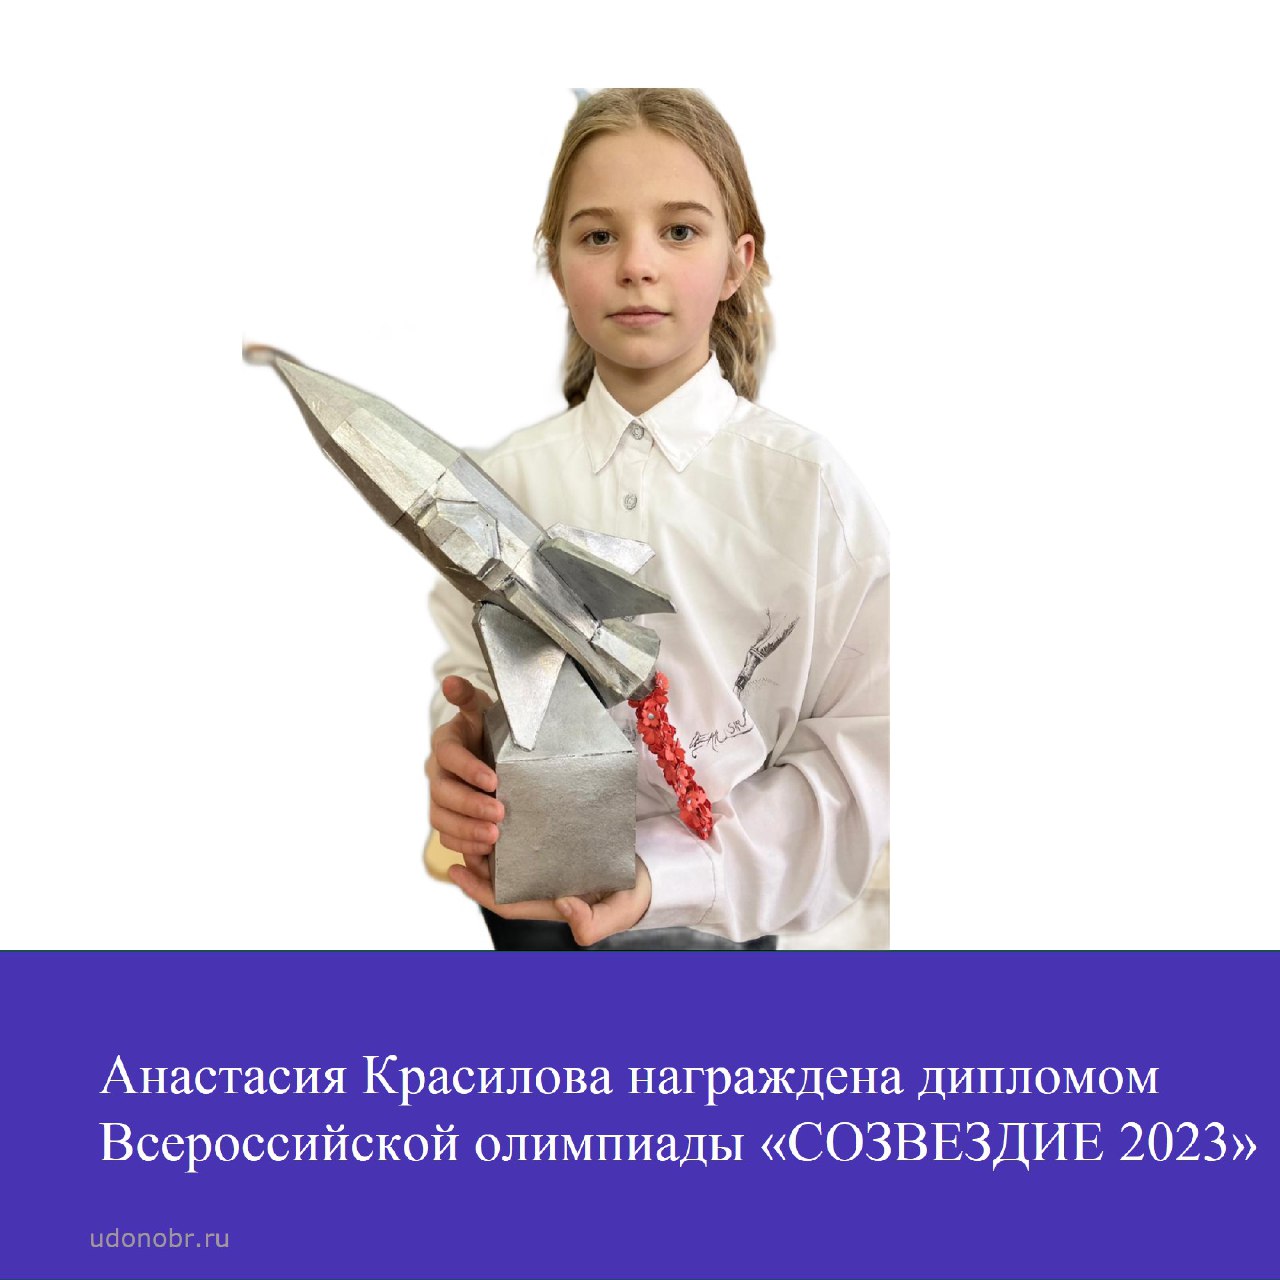 Анастасия Красилова награждена дипломом Всероссийской олимпиады «СОЗВЕЗДИЕ 2023»